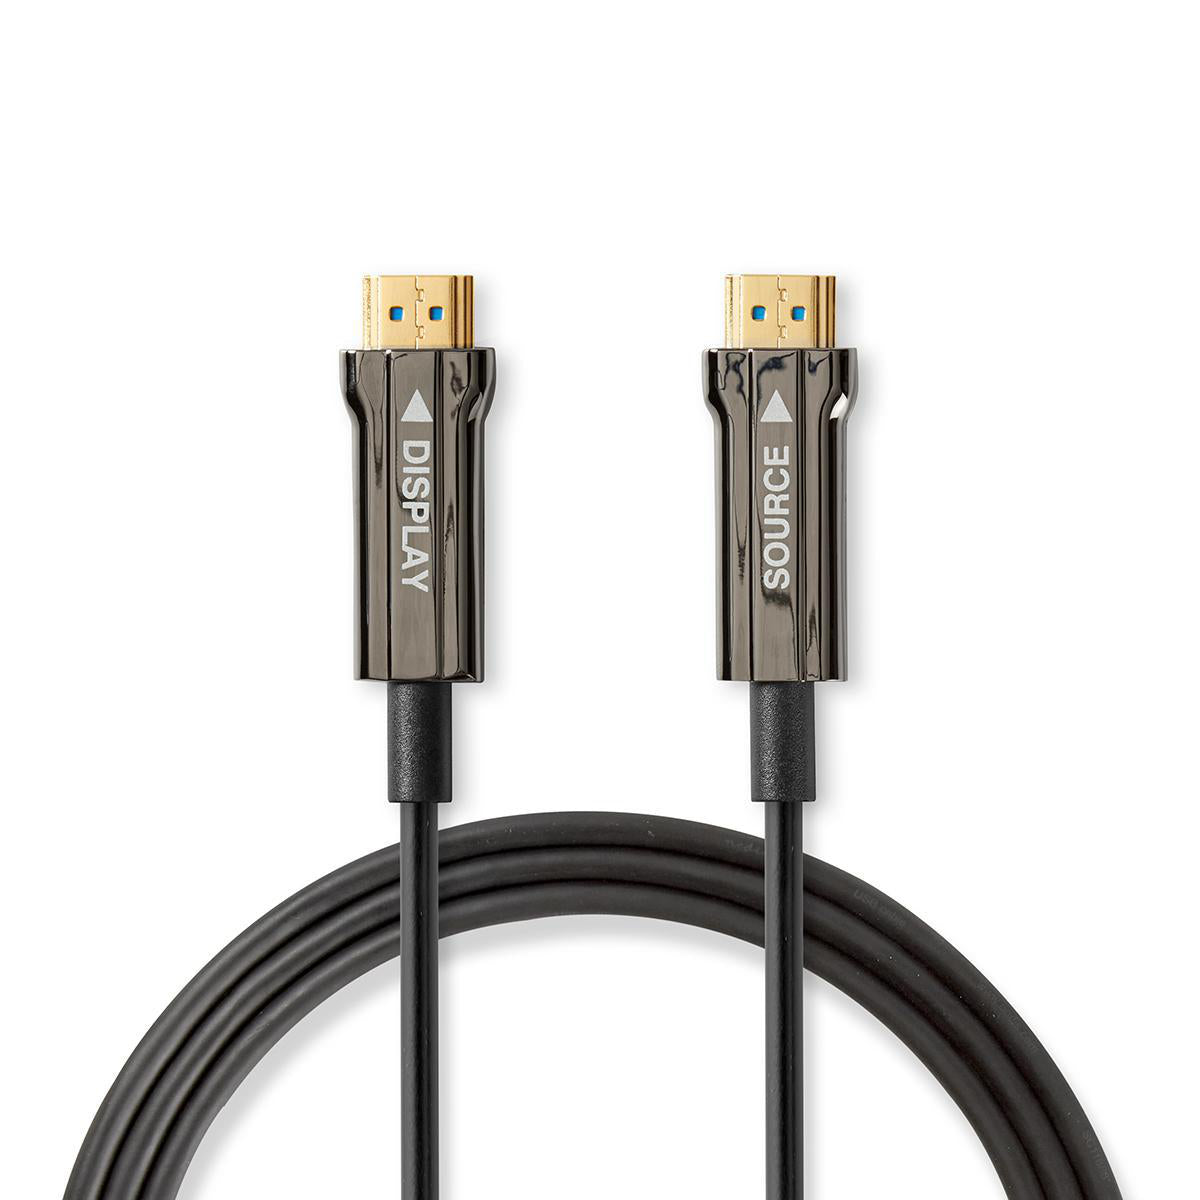 Aktive Optische Ultra High Speed HDMI-Kabel mit Ethernet | HDMI™ Stecker | HDMI™ Stecker | 8K@60Hz | 48 Gbps | 40.0 m | Rund | PVC | Schwarz | Kartonverpackung